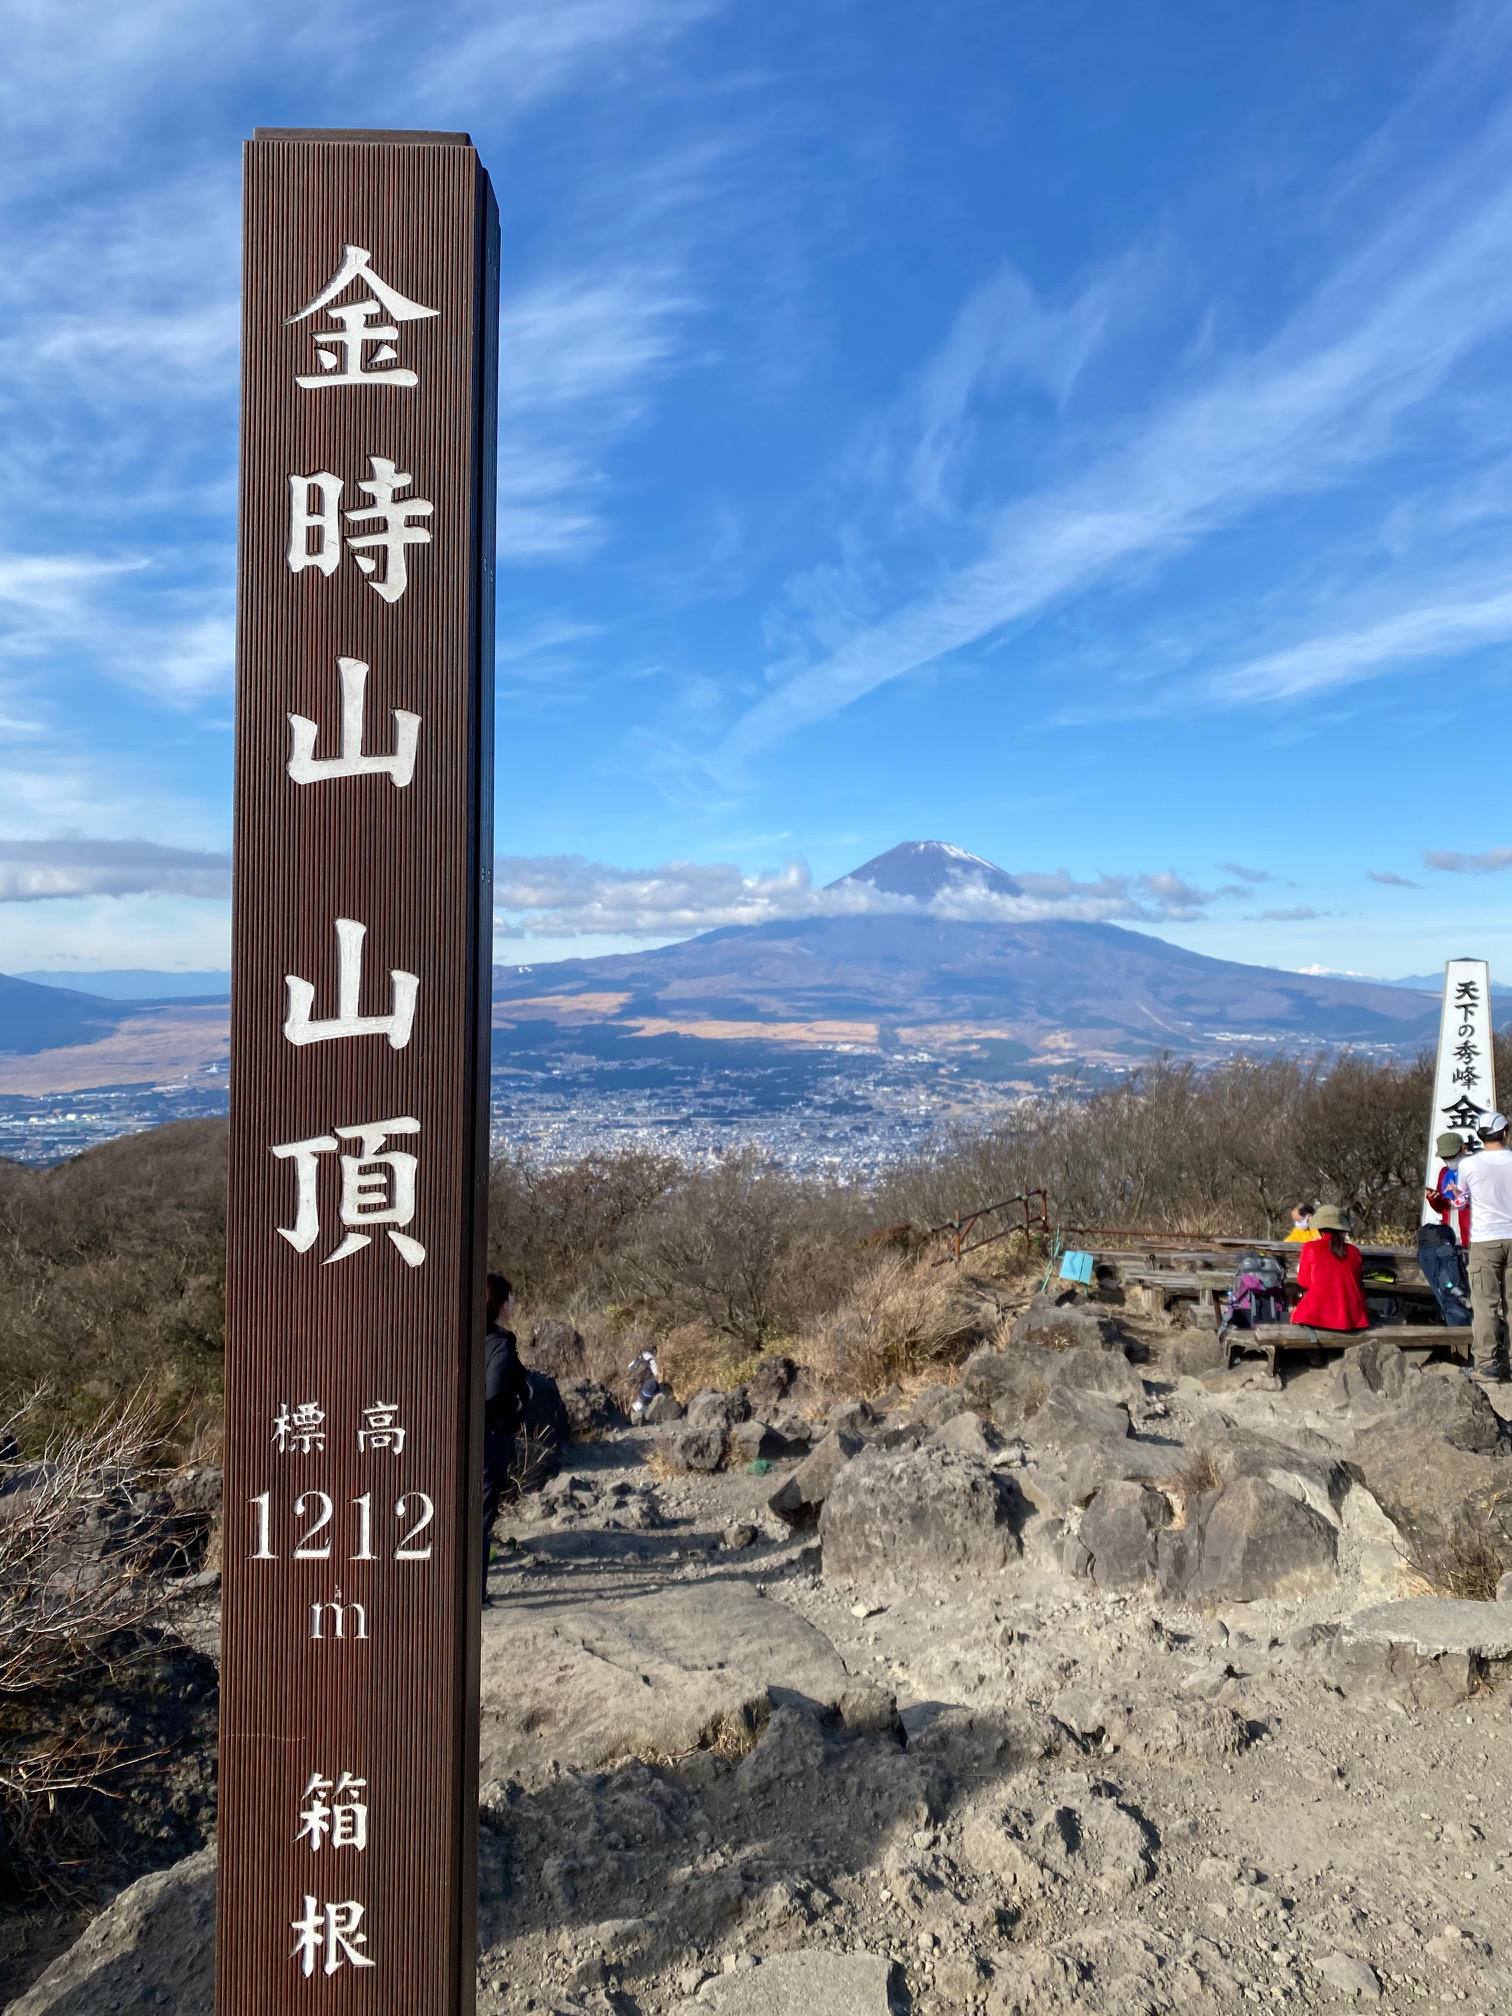 ON THE TRAIL OF KINTARO - Hiking in Hakone